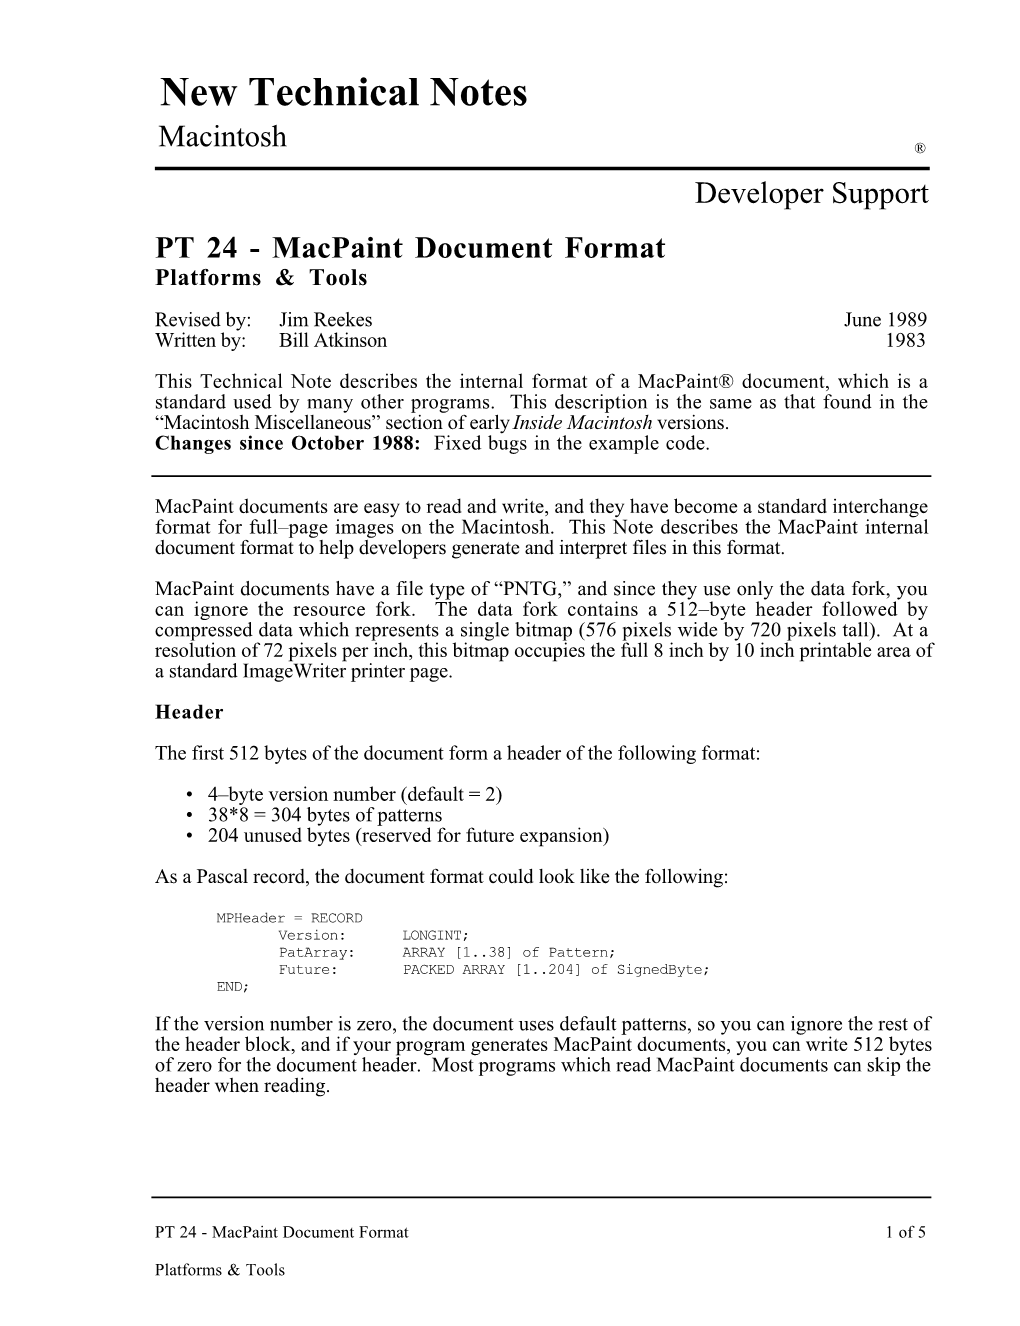 Macpaint Document Format